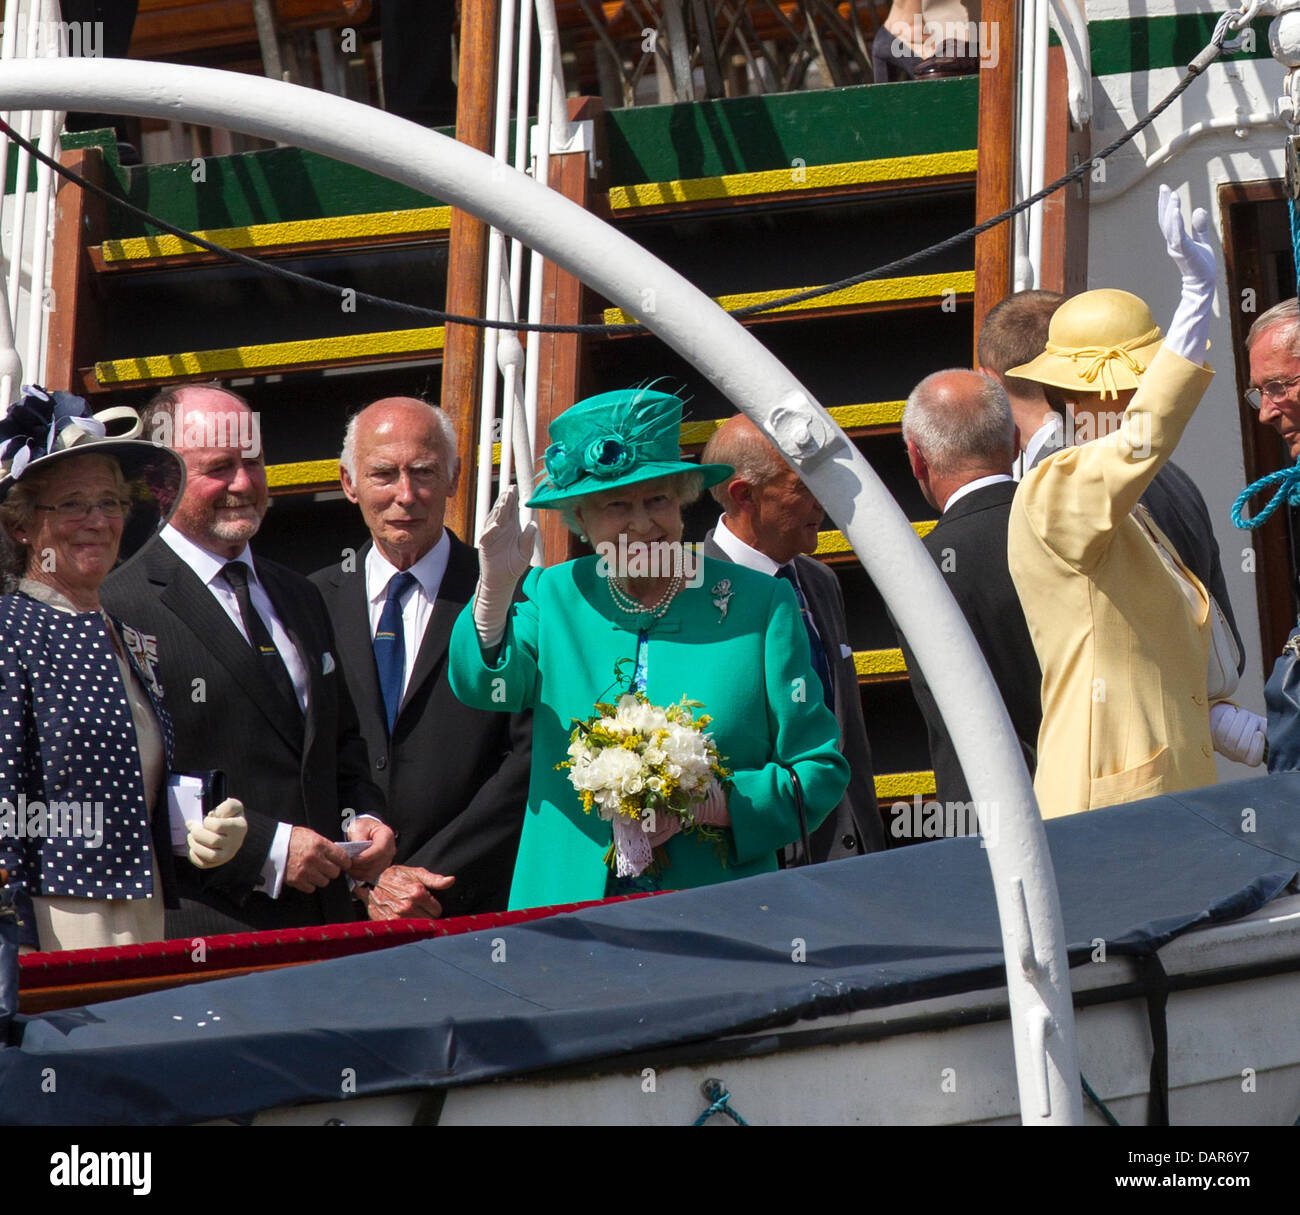 Windermere, Großbritannien. 17. Juli 2013. Ihre Majestät die Königin & The Princess Royal bei einem Besuch in Lake Windermere Credit: Shoosmith Sammlung/Alamy Live News Stockfoto